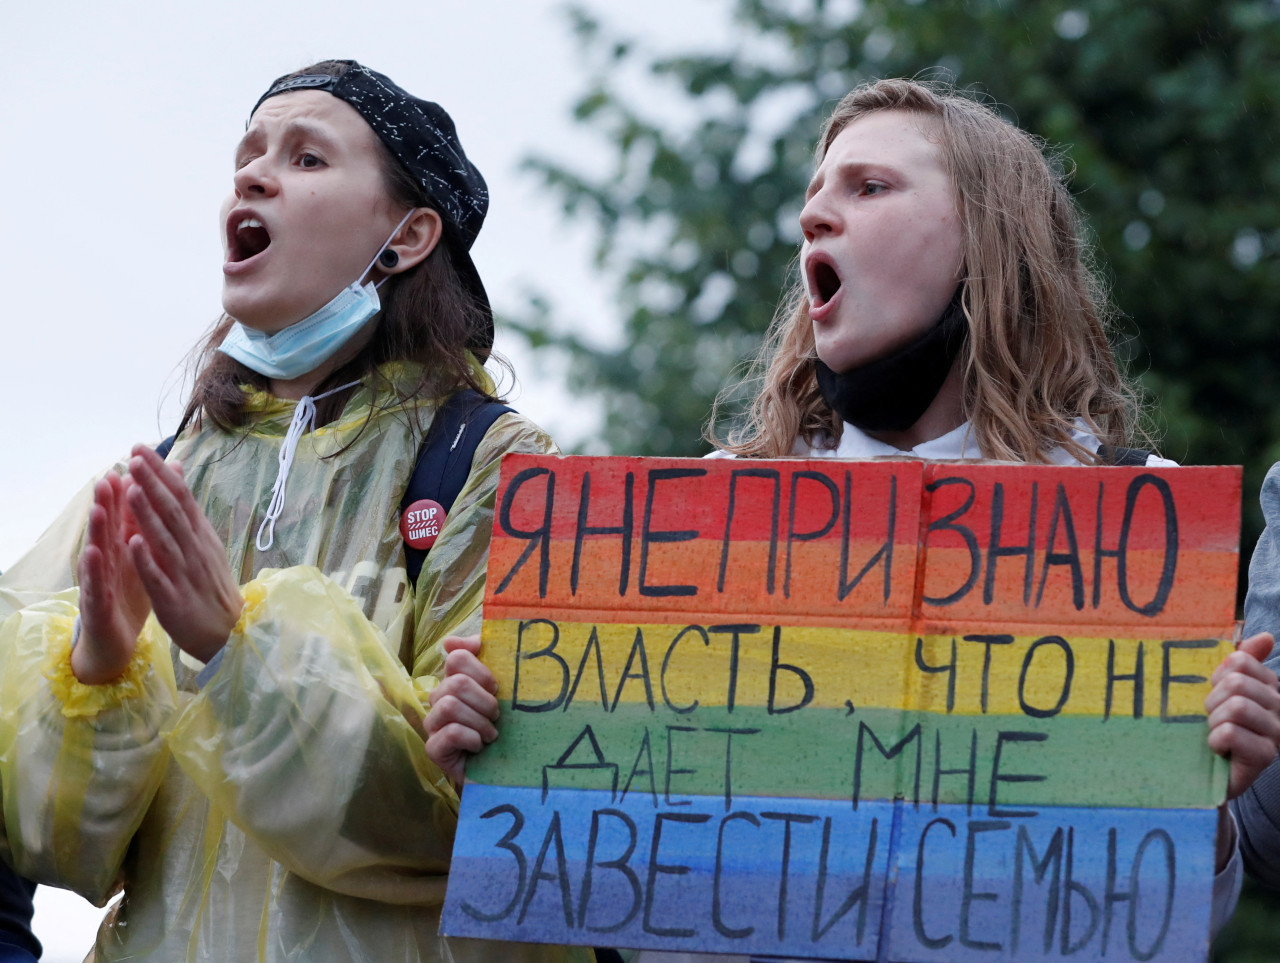 Personas protestan contra las enmiendas a la Constitución rusa en Moscú. Reuters